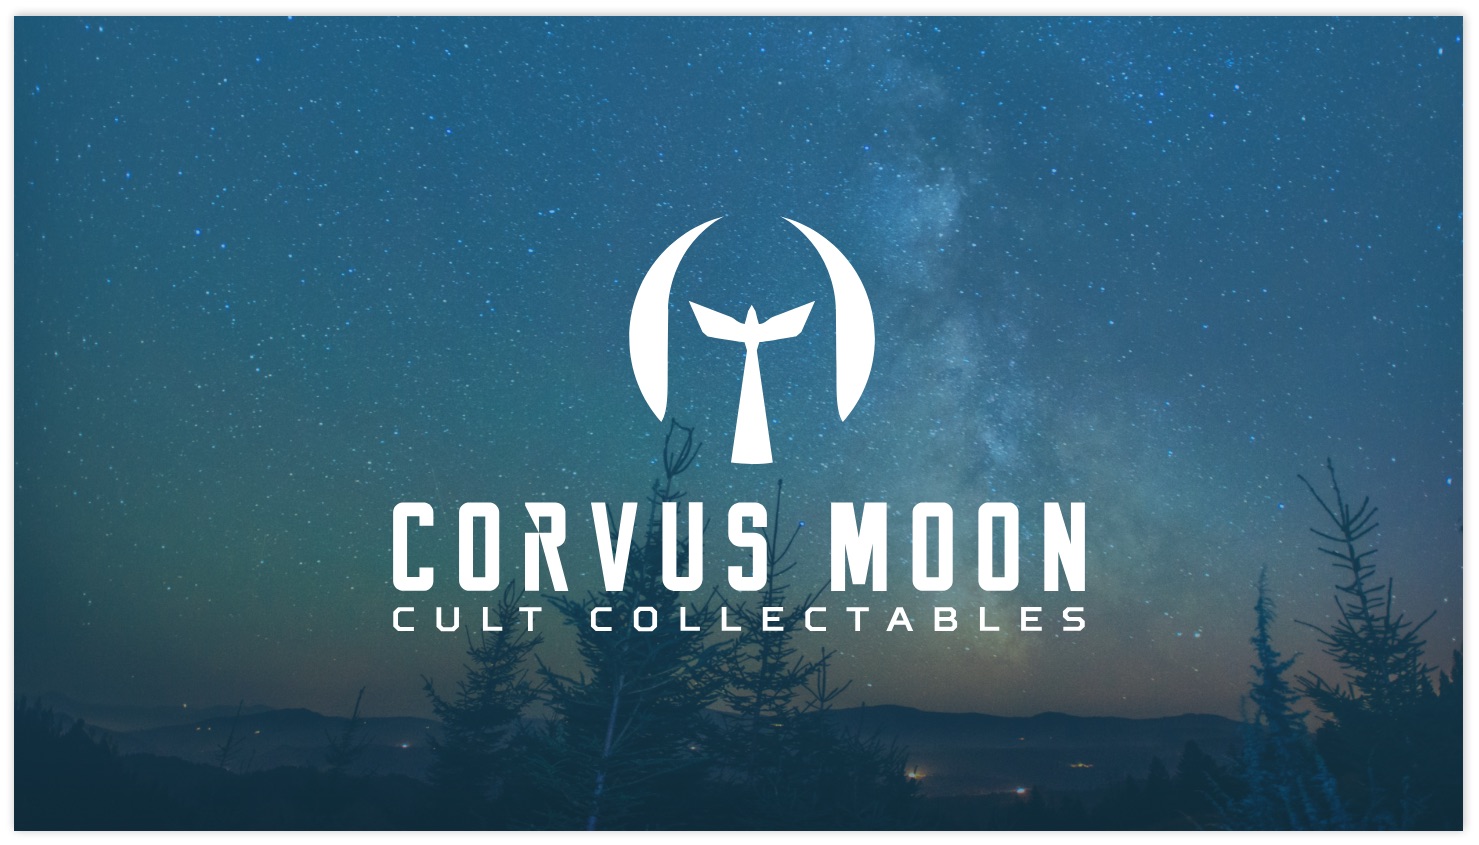 Corvus Moon branding